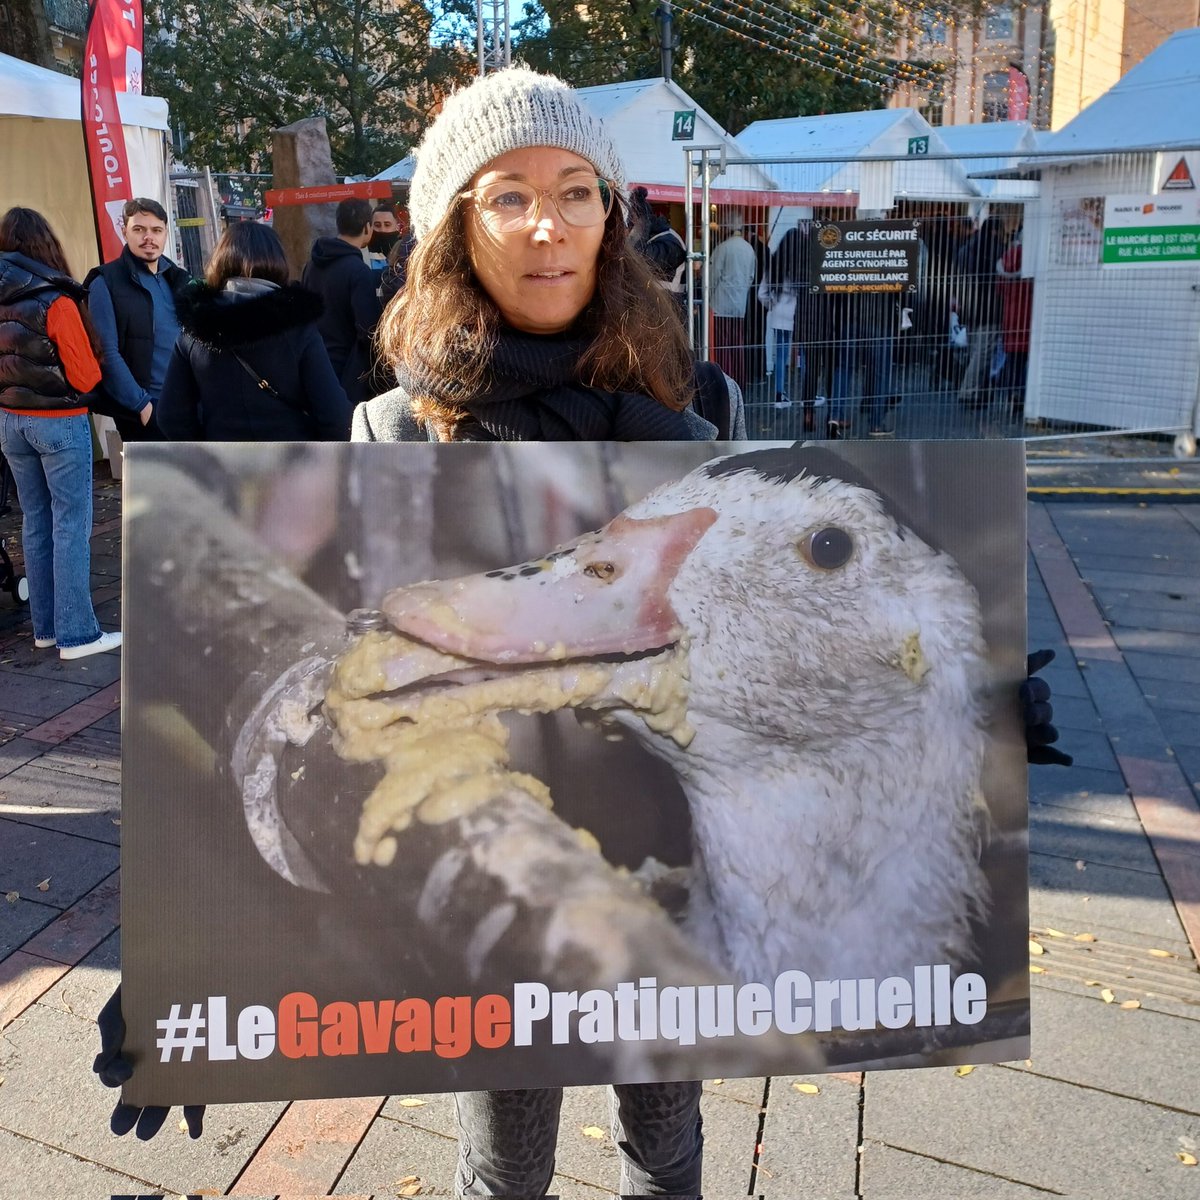 #actionpourlesanimaux hier à #Toulouse

#stopgavage #stopfoiegras en soutien de @L214 et du @PartiAnimaliste 👏

#agirpourlesanimaux #souffranceanimale #defendrelesanimaux #stopspecisme #justicepourlesanimaux #evoluons